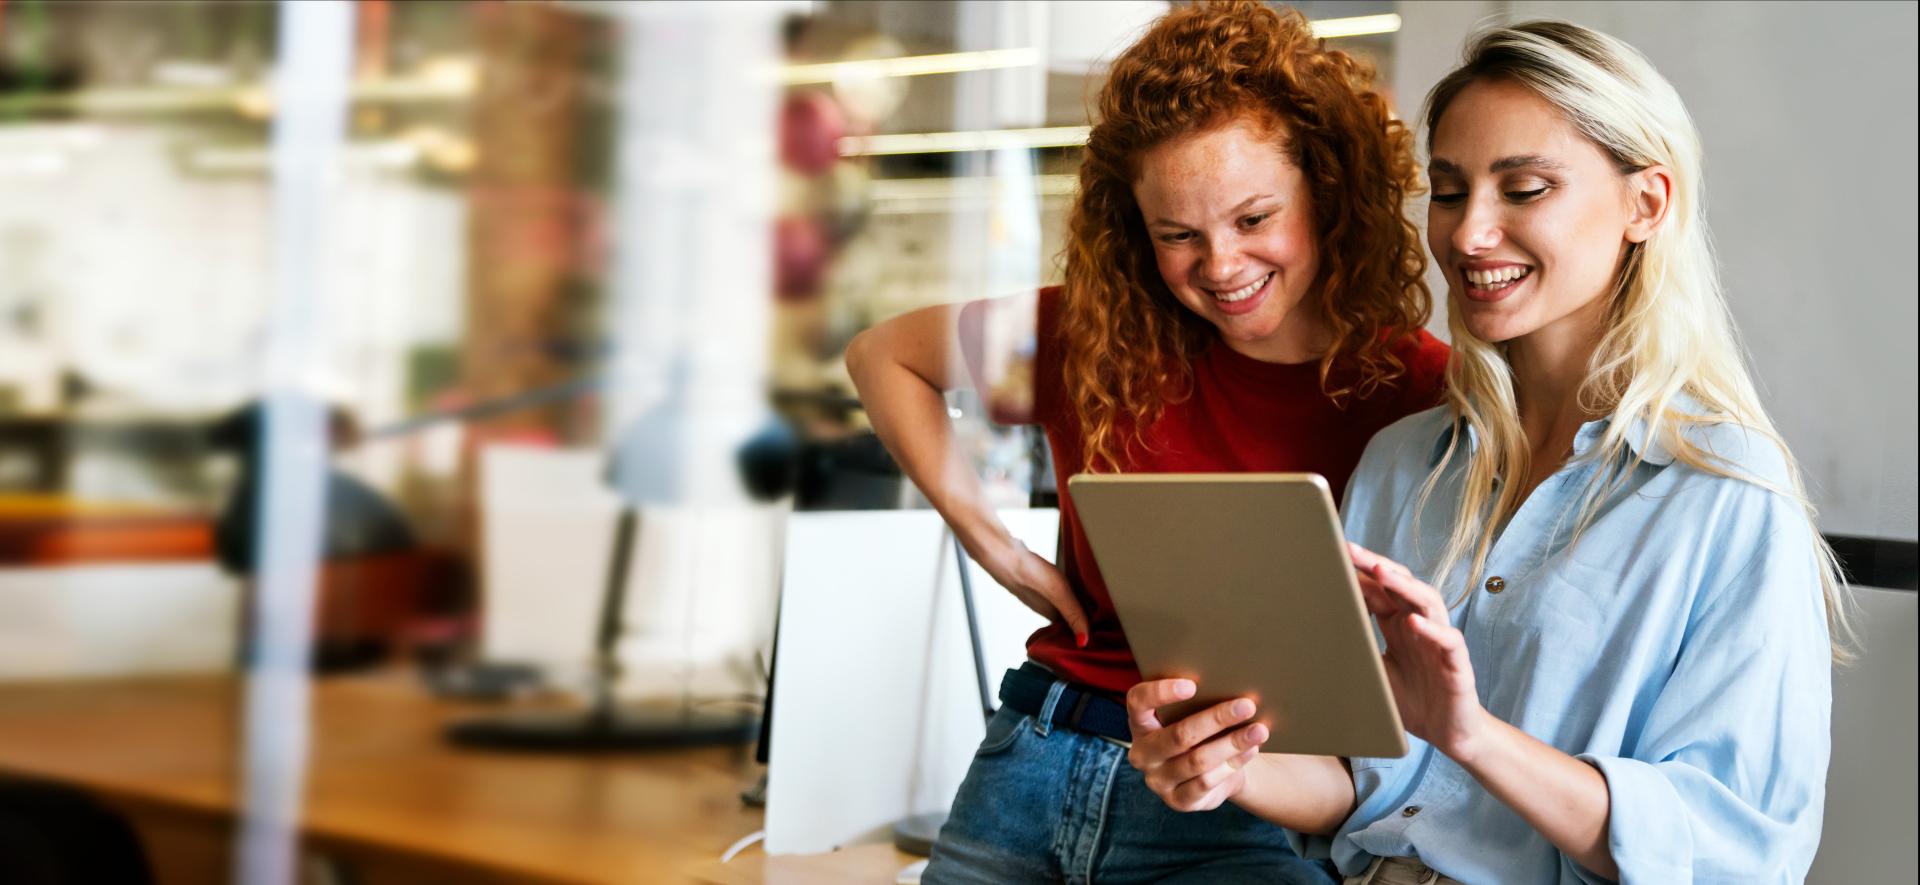 zdjęcie przedstawia dwie kobiety patrzące na ekran tabletu